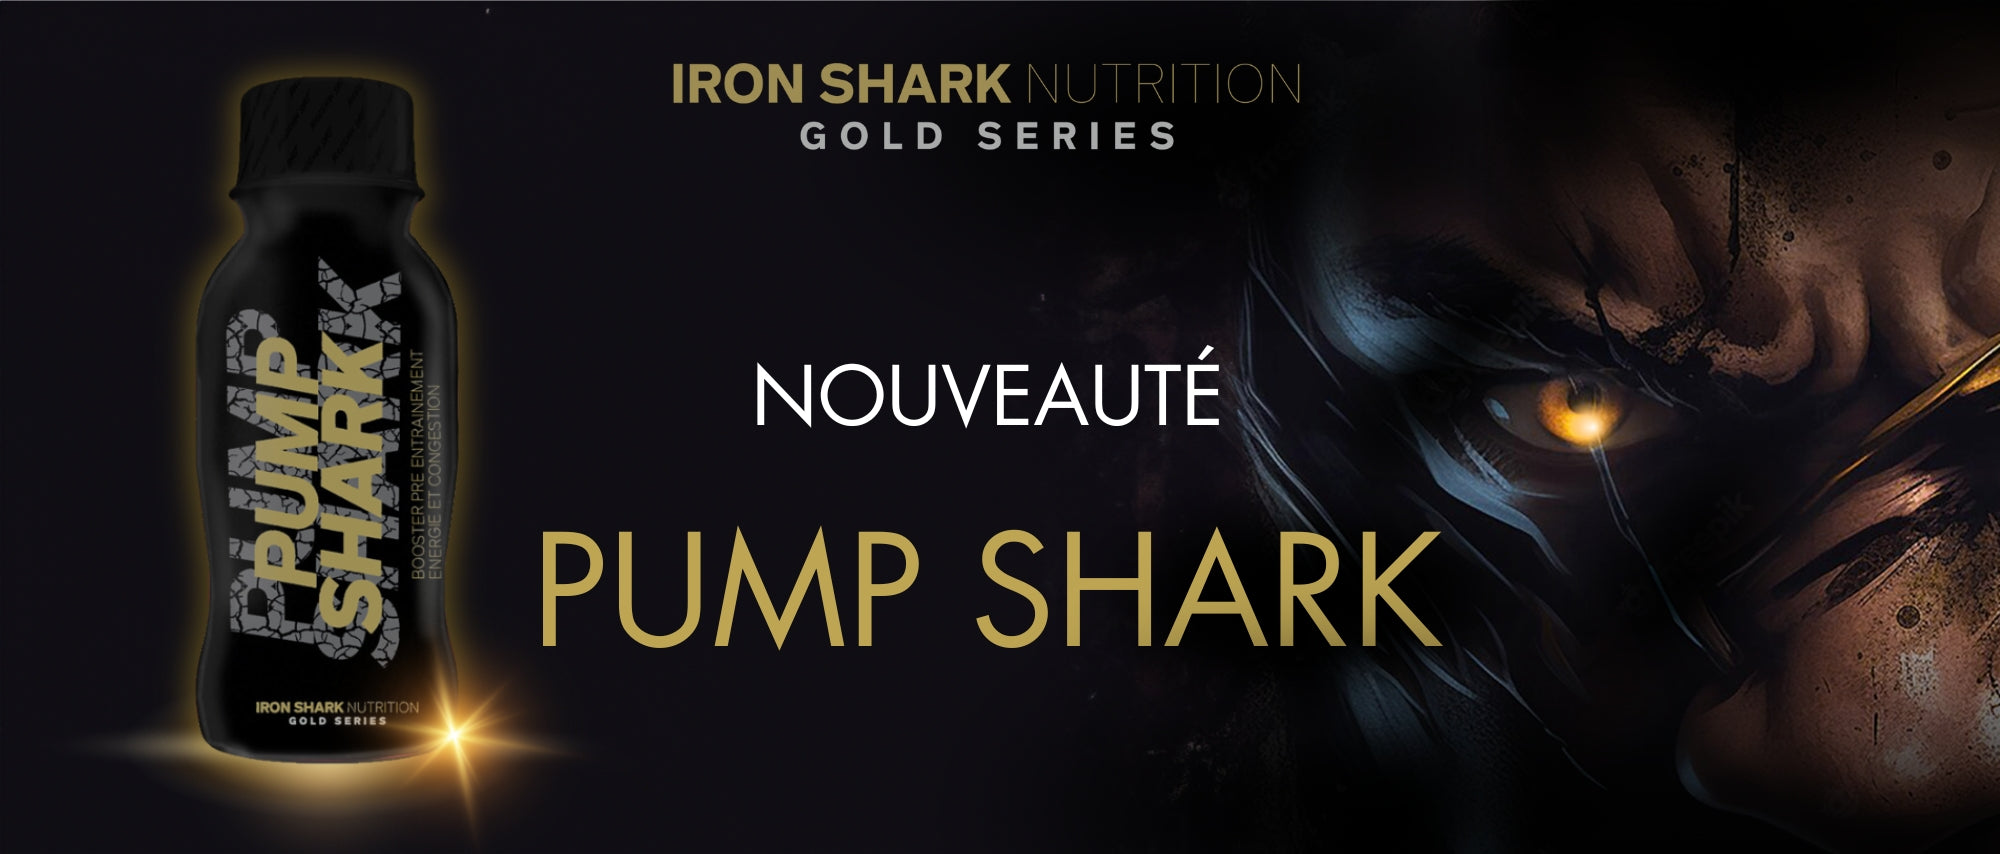 Nouveauté pump shark